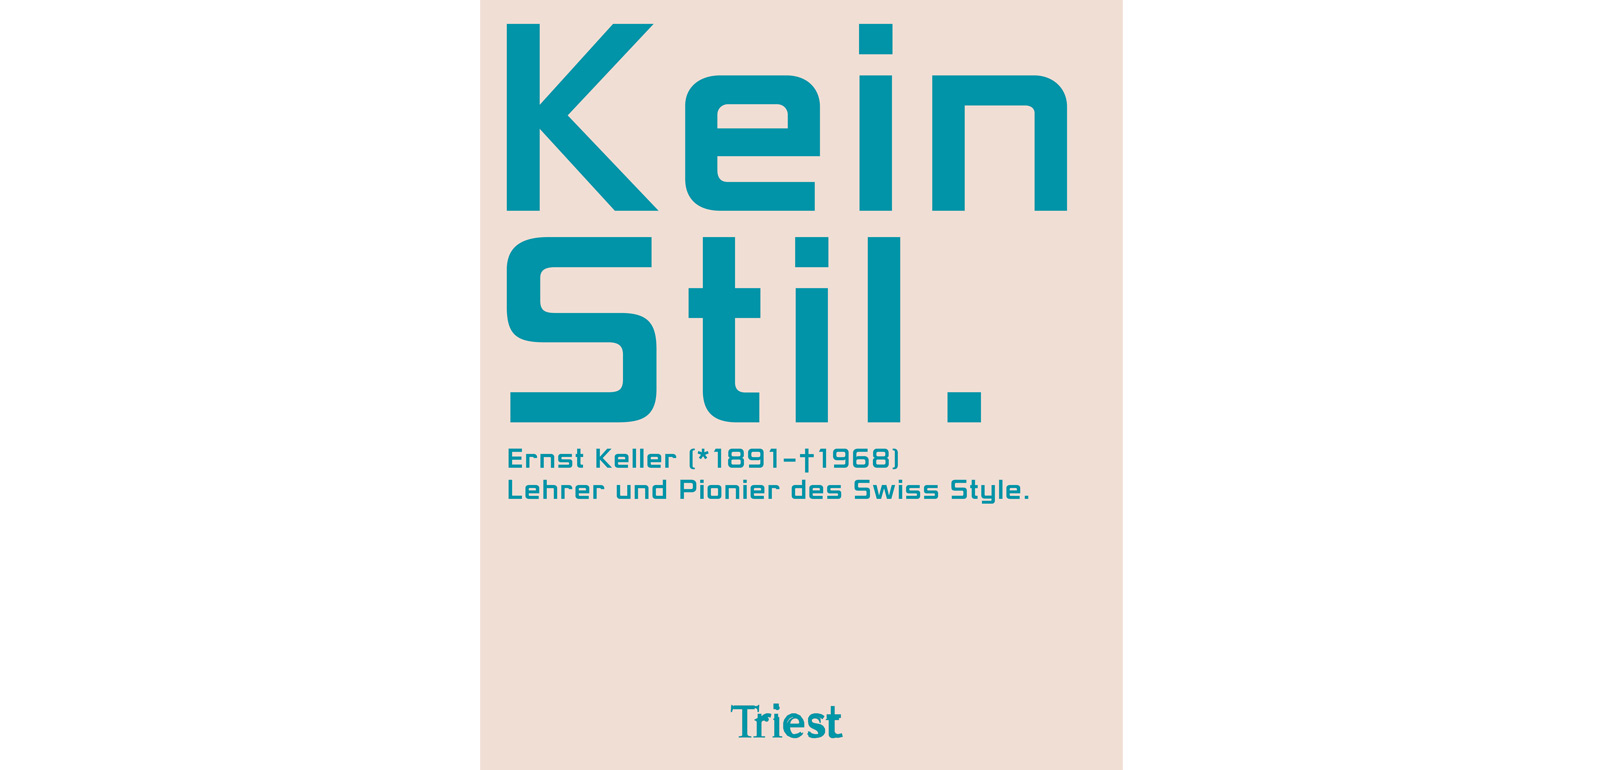 Fonts wie die Helvetica sind heute weltbekannt. Wer aber kennt den Pionier des Swiss Style, Ernst Keller? Die erste umfassende Monografie soll das ändern.